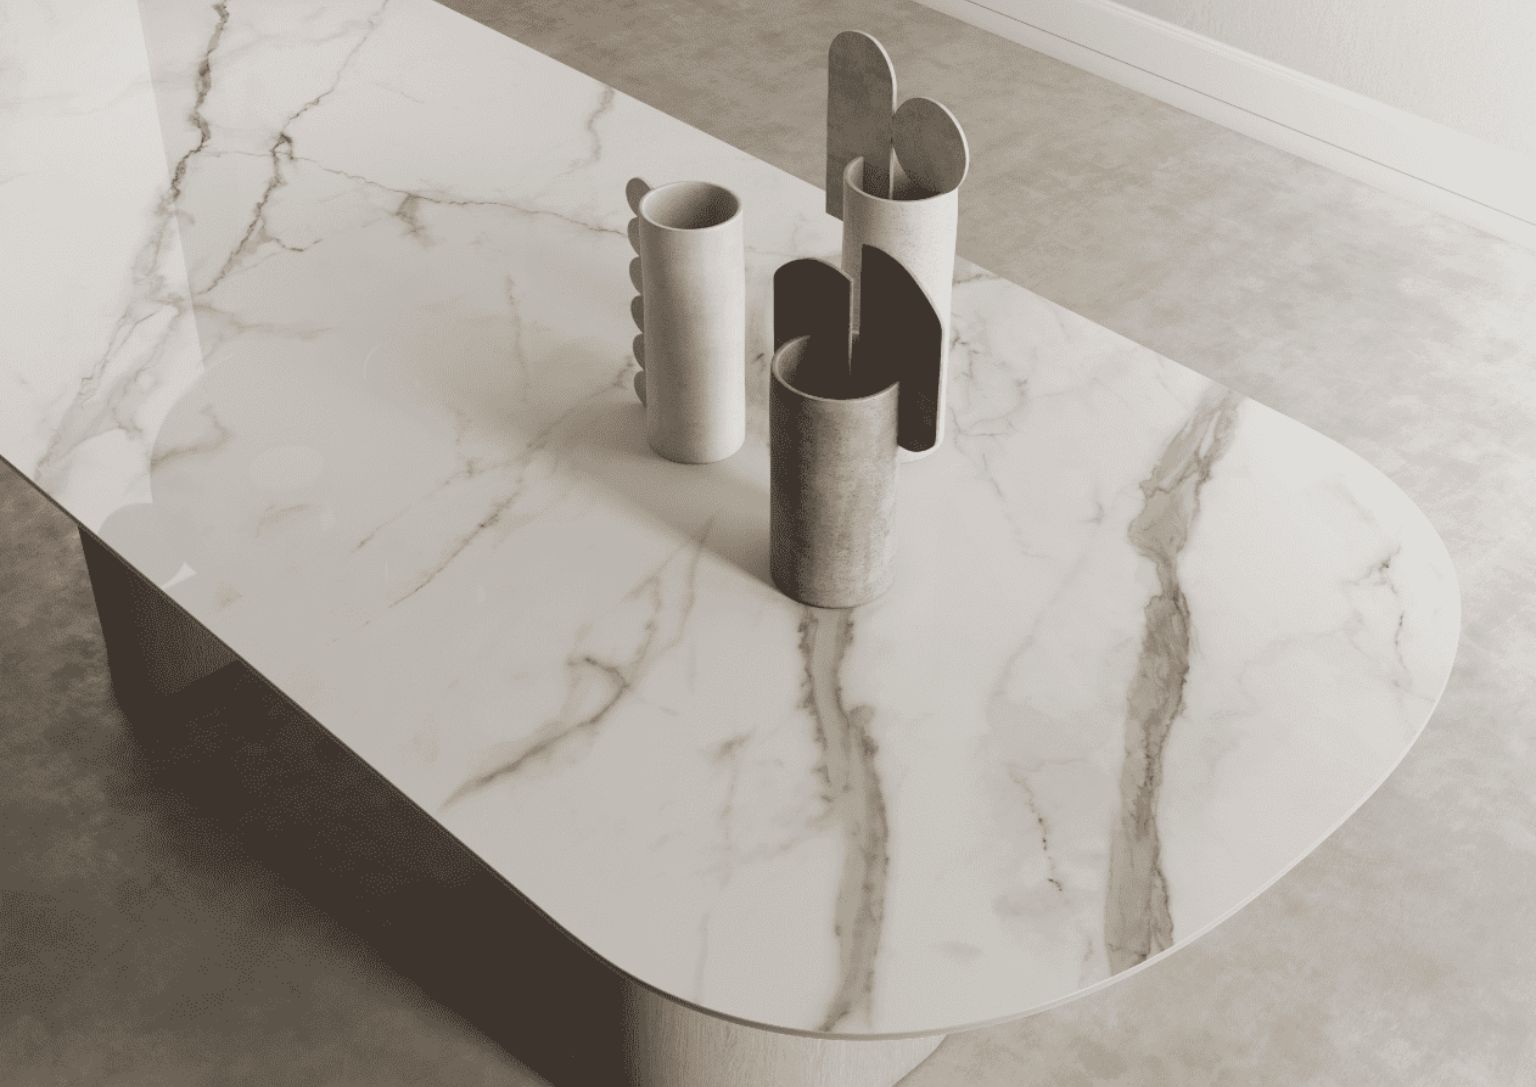 Tavolo in gres porcellanato effetto marmo o tavolo in marmo: qual è la scelta migliore?